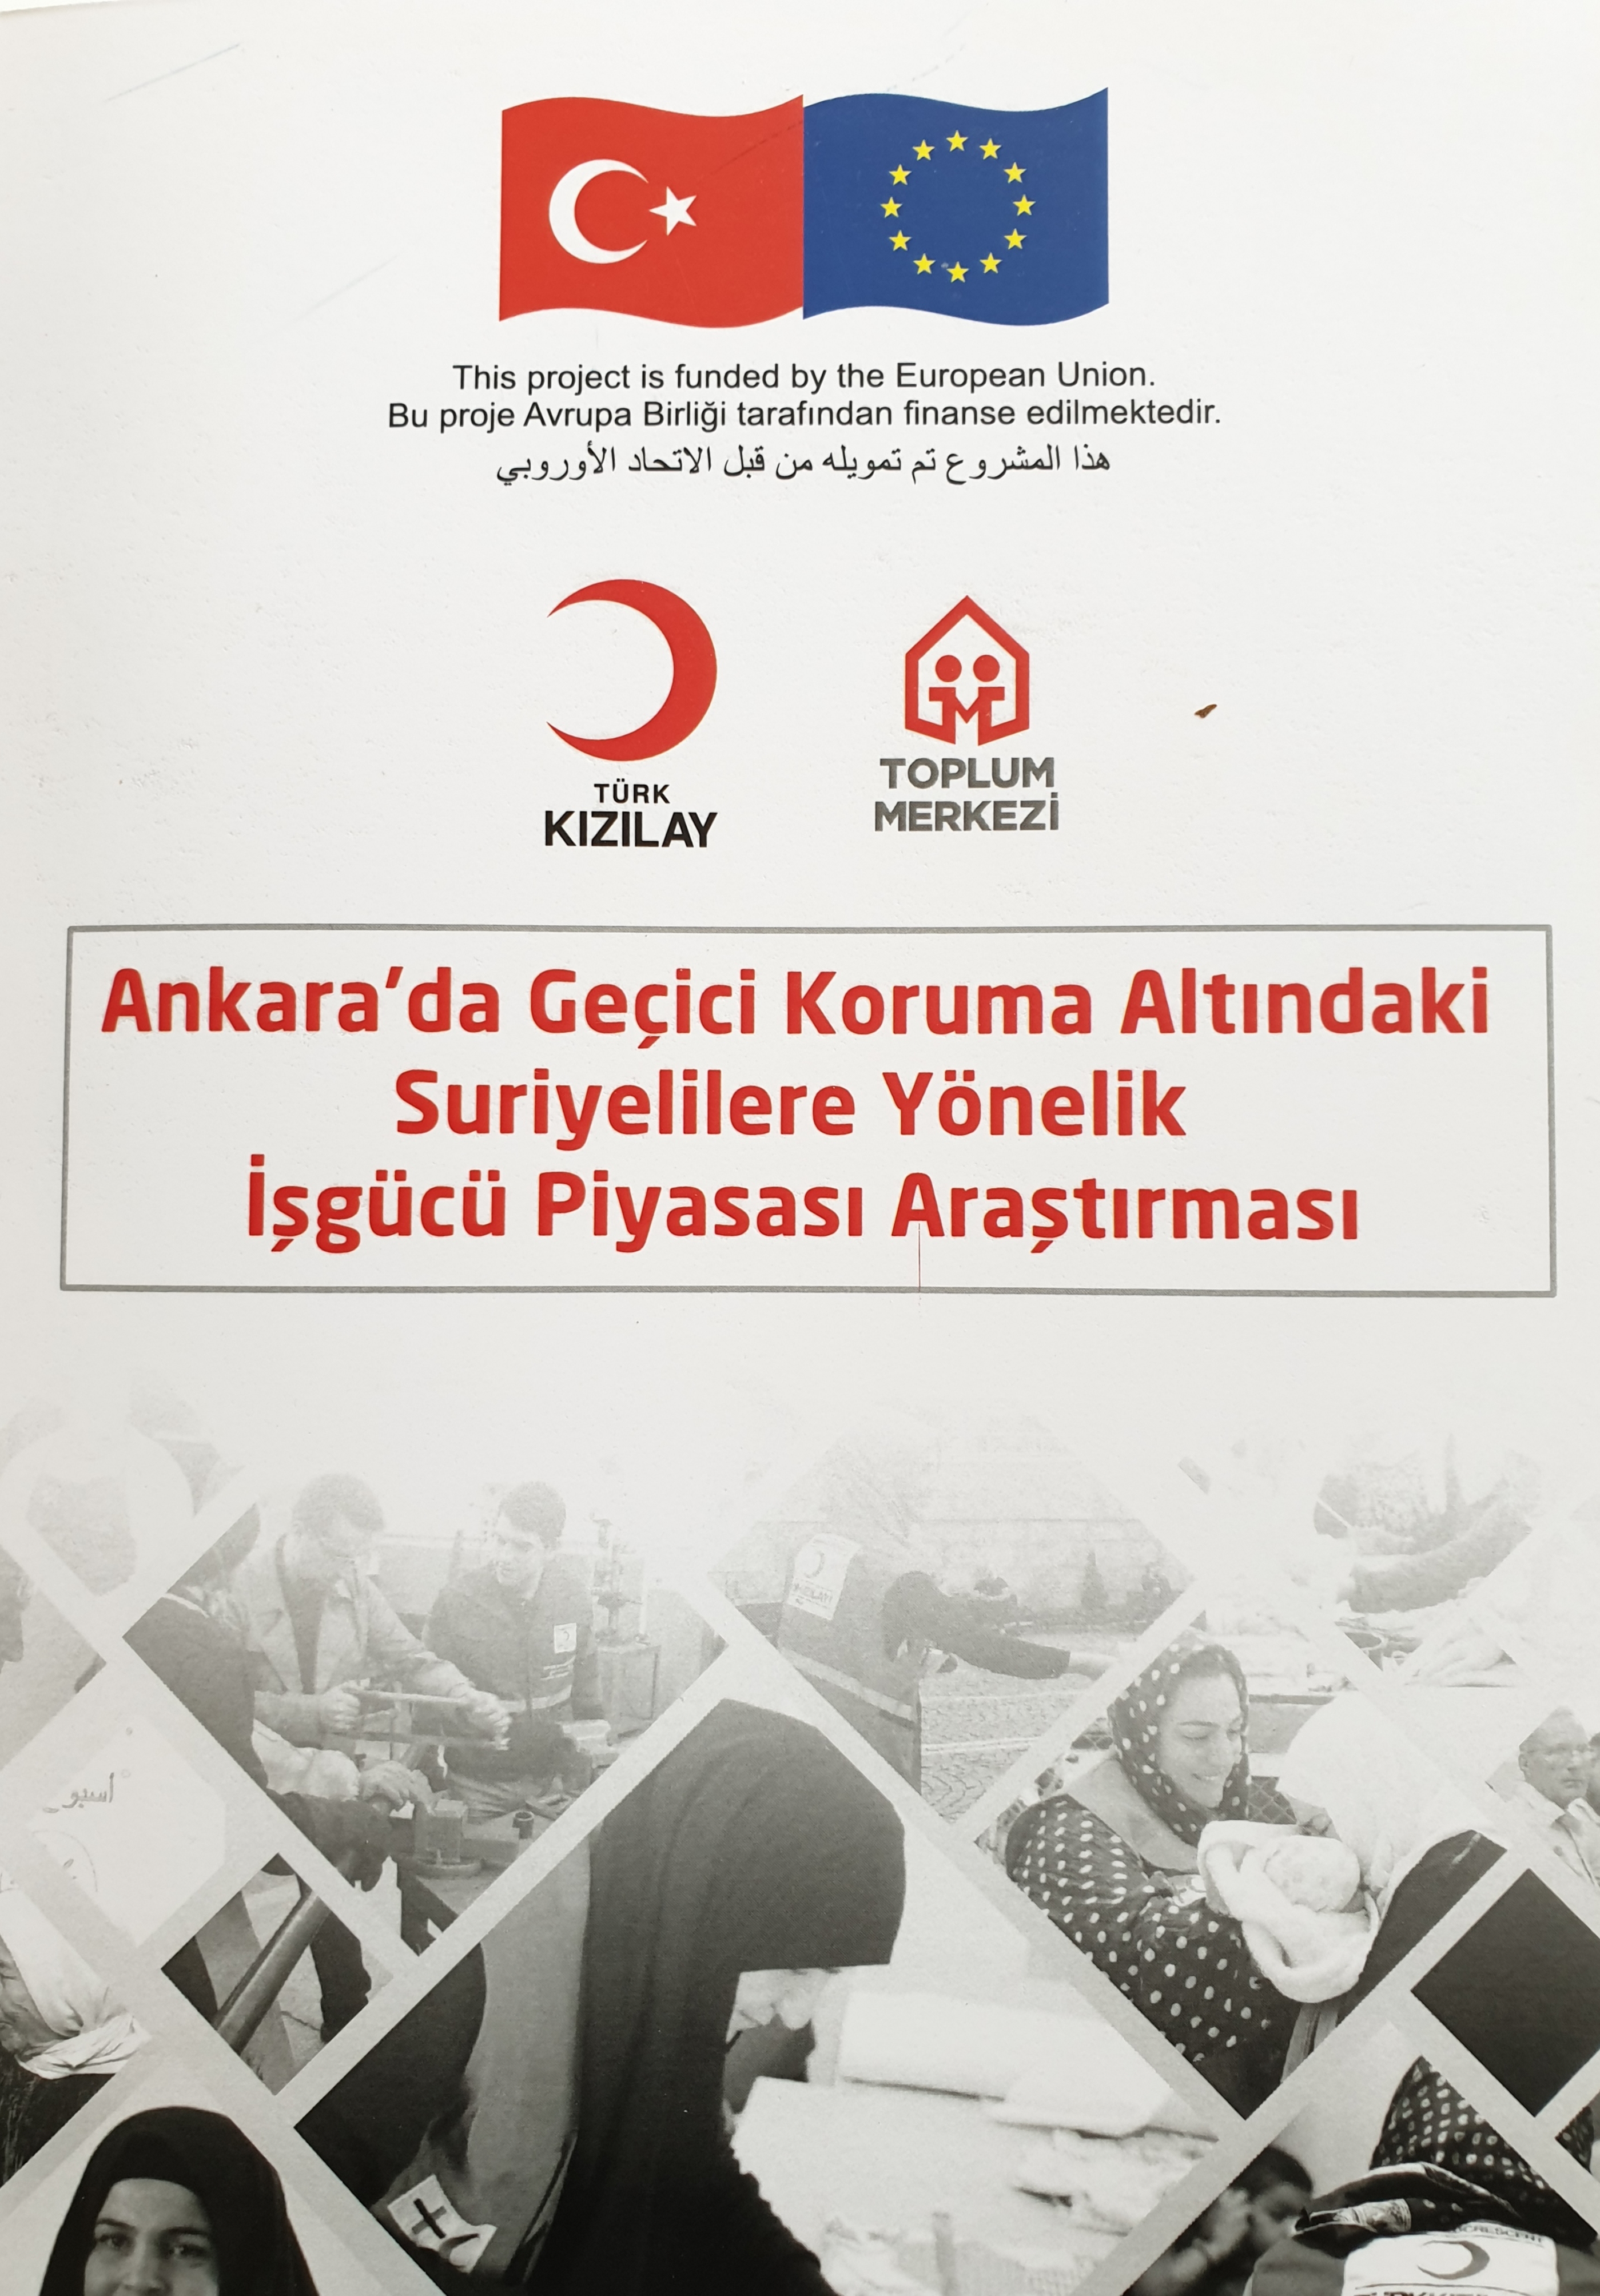 Ankara’da Geçici Koruma Altındaki Suriyelilere Yönelik İşgücü Piyasası Araştırması Yayınlandı